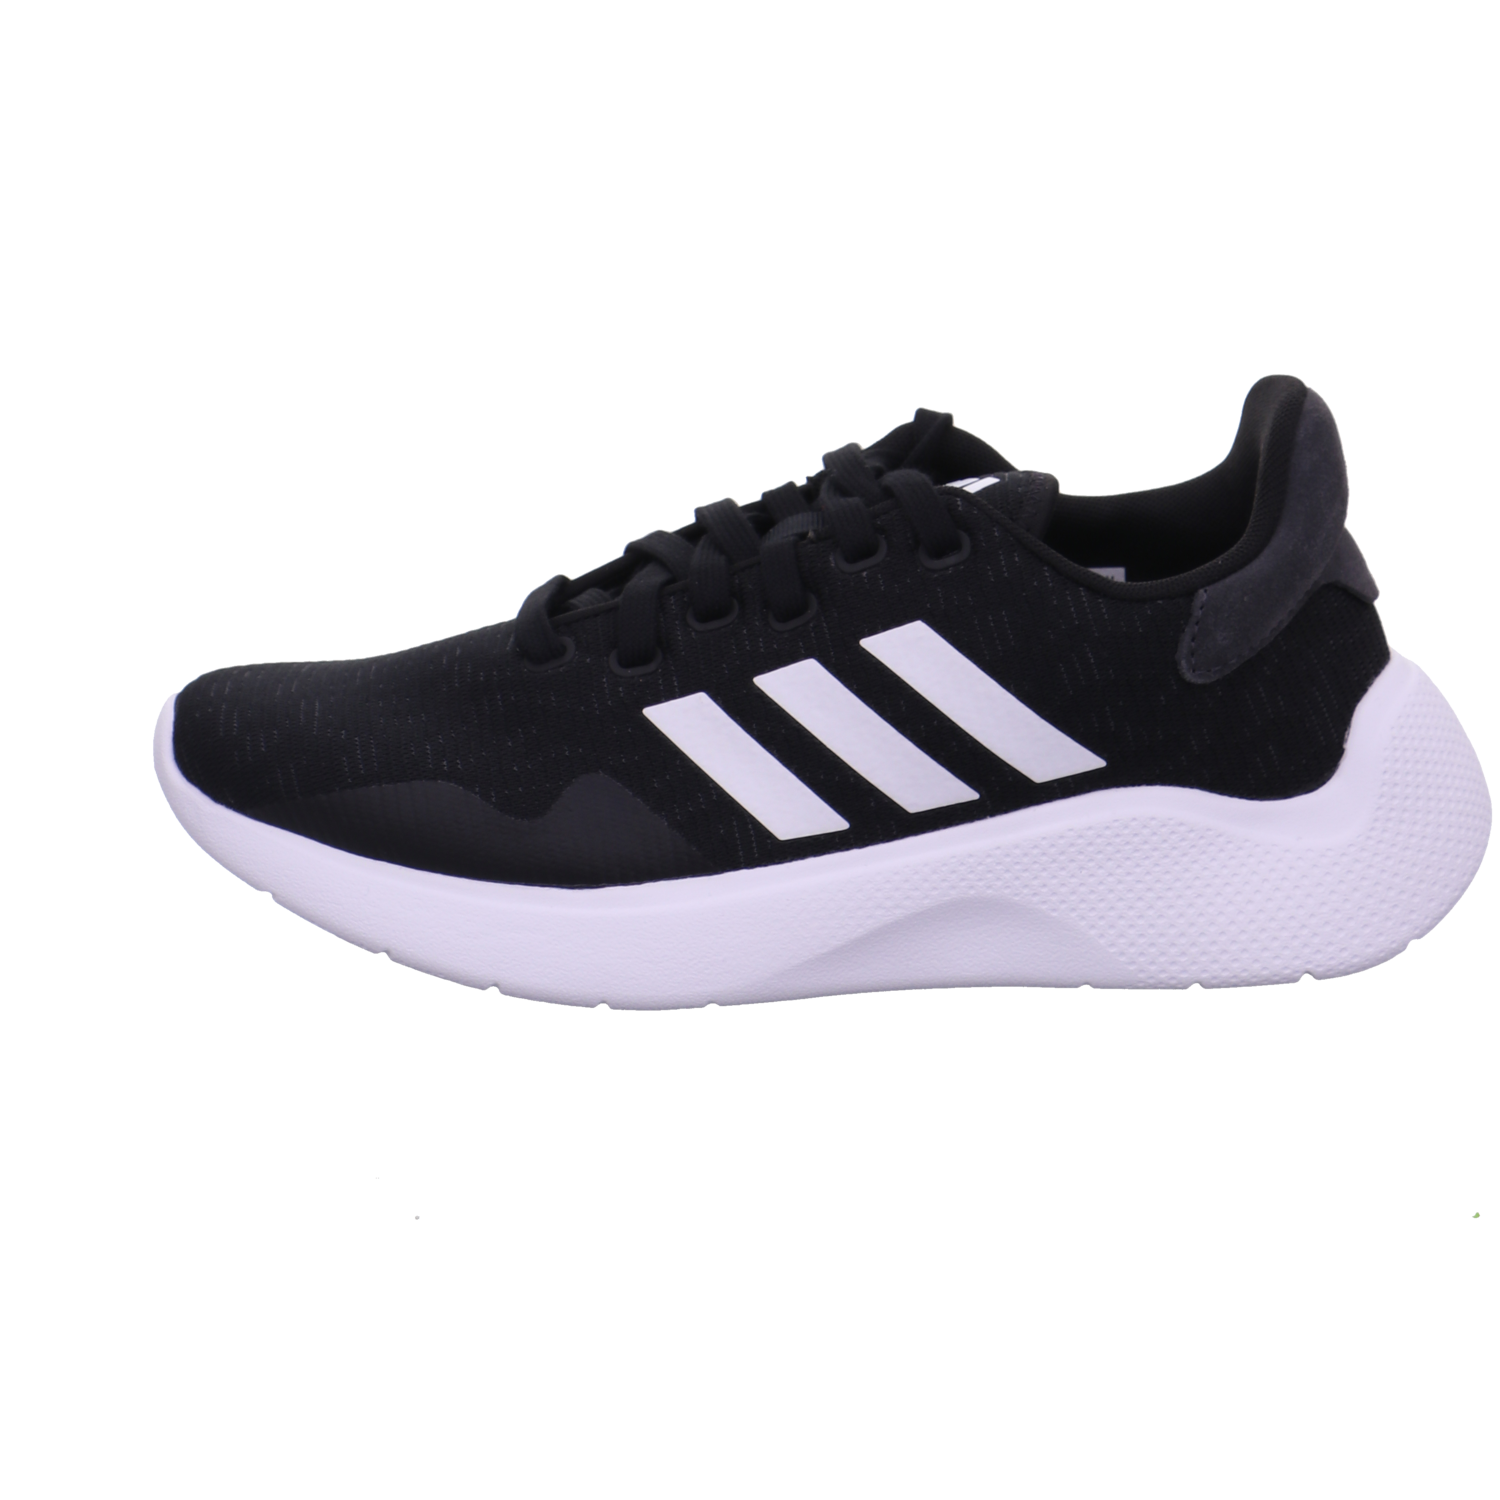 Adidas Training und Hallenschuhe schwarz kombi Bild1